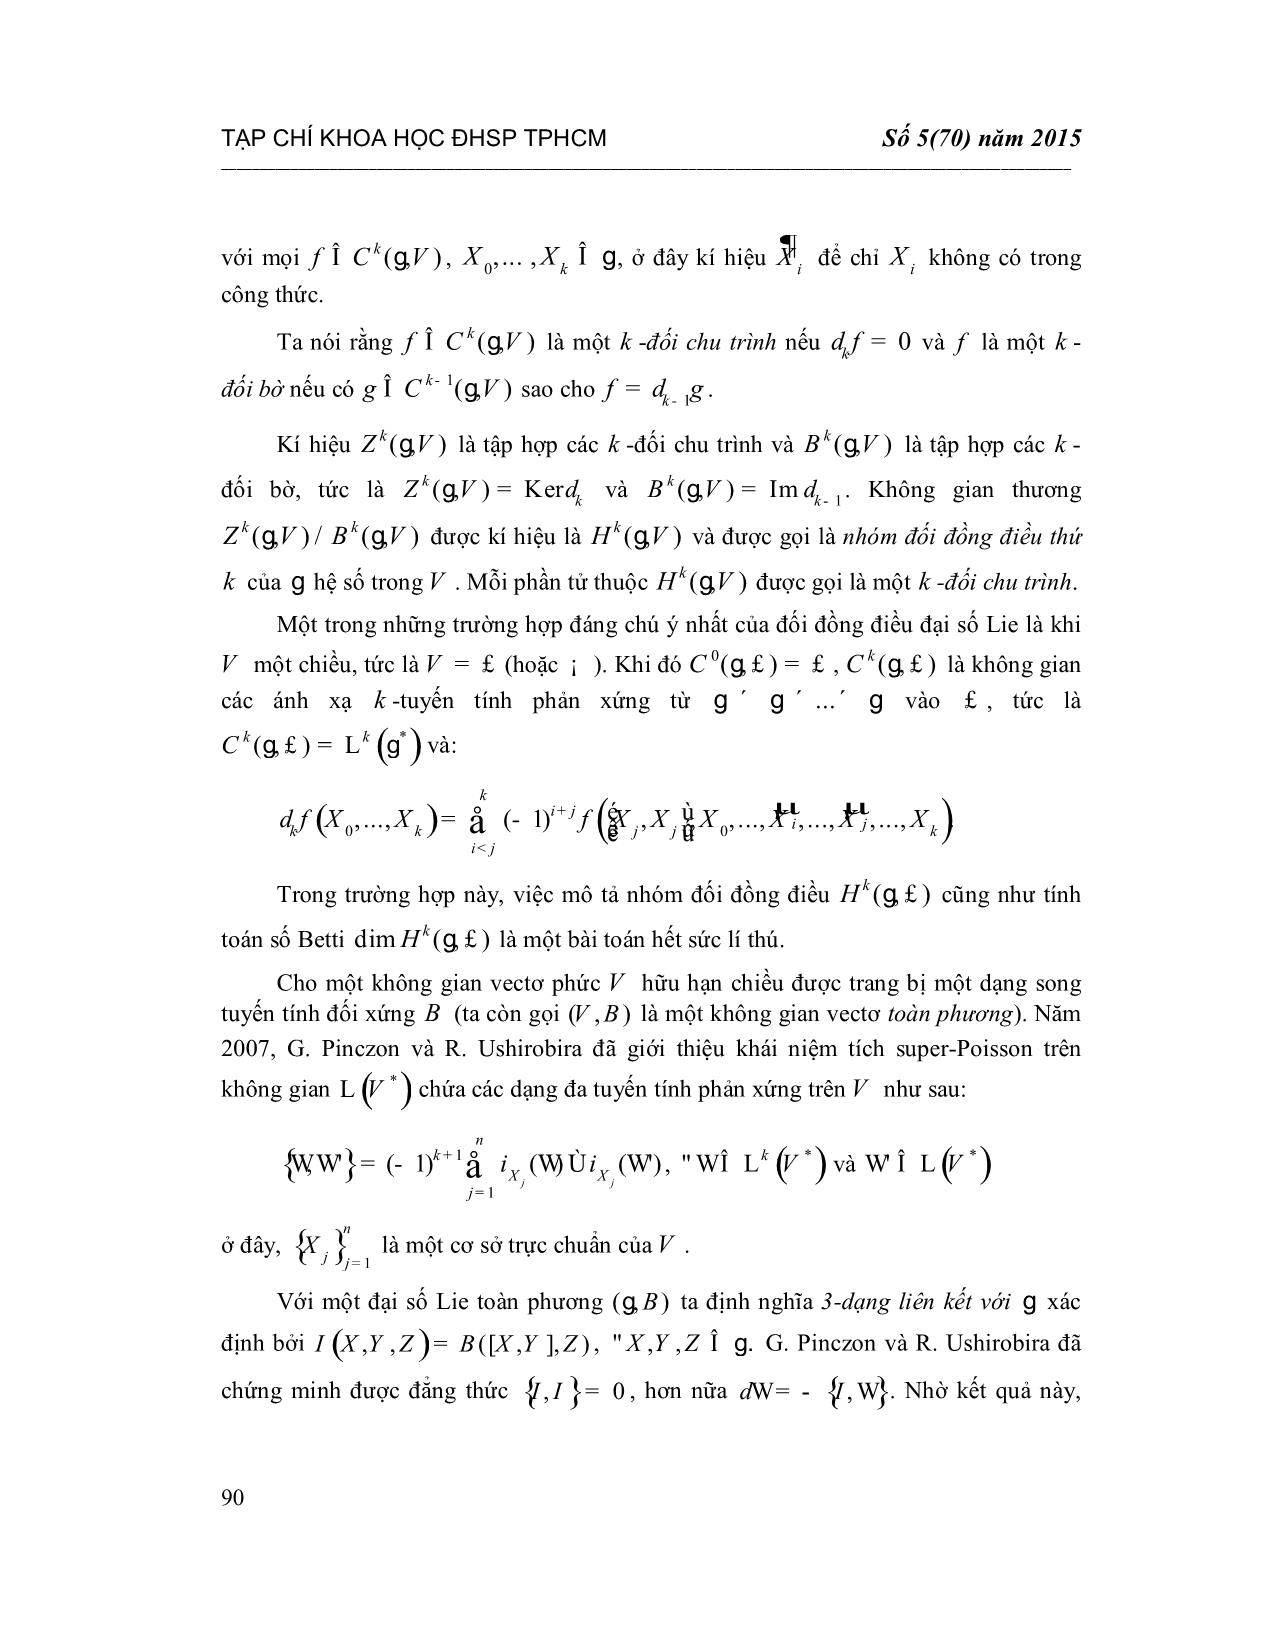 Số Betti và không gian các đạo hàm phản xứng của các đại số Lie toàn phương giải được có số chiều 7 trang 5